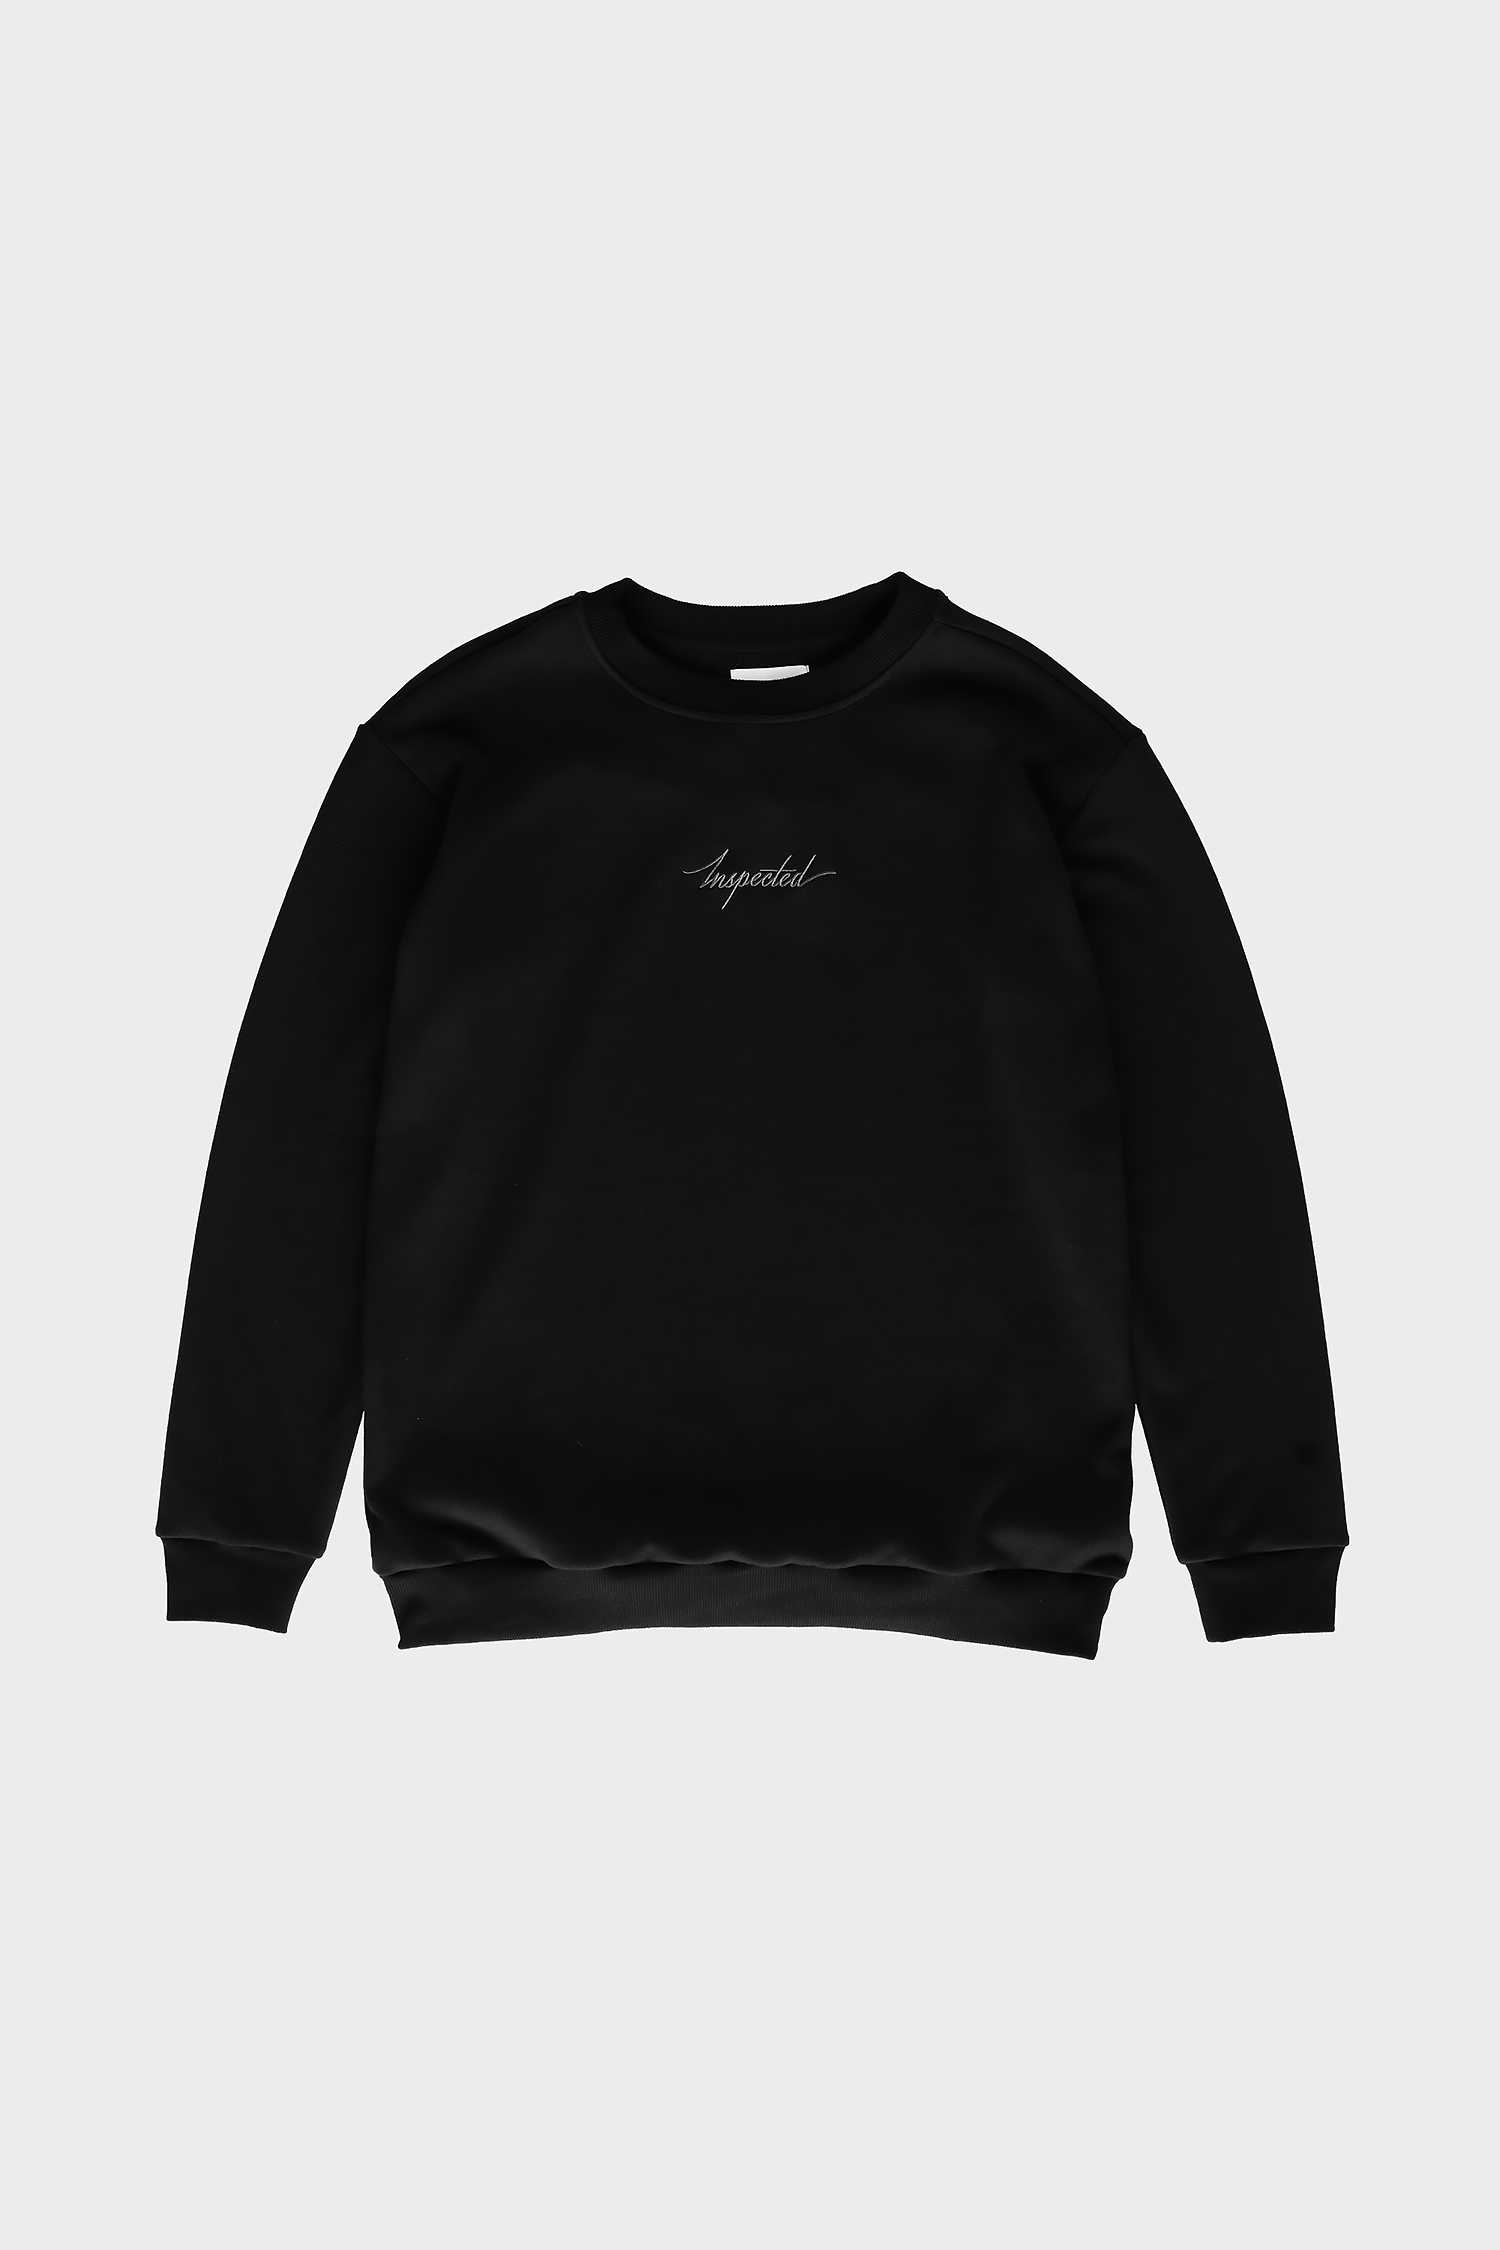 Remastered Sweatshirt — Black on Black